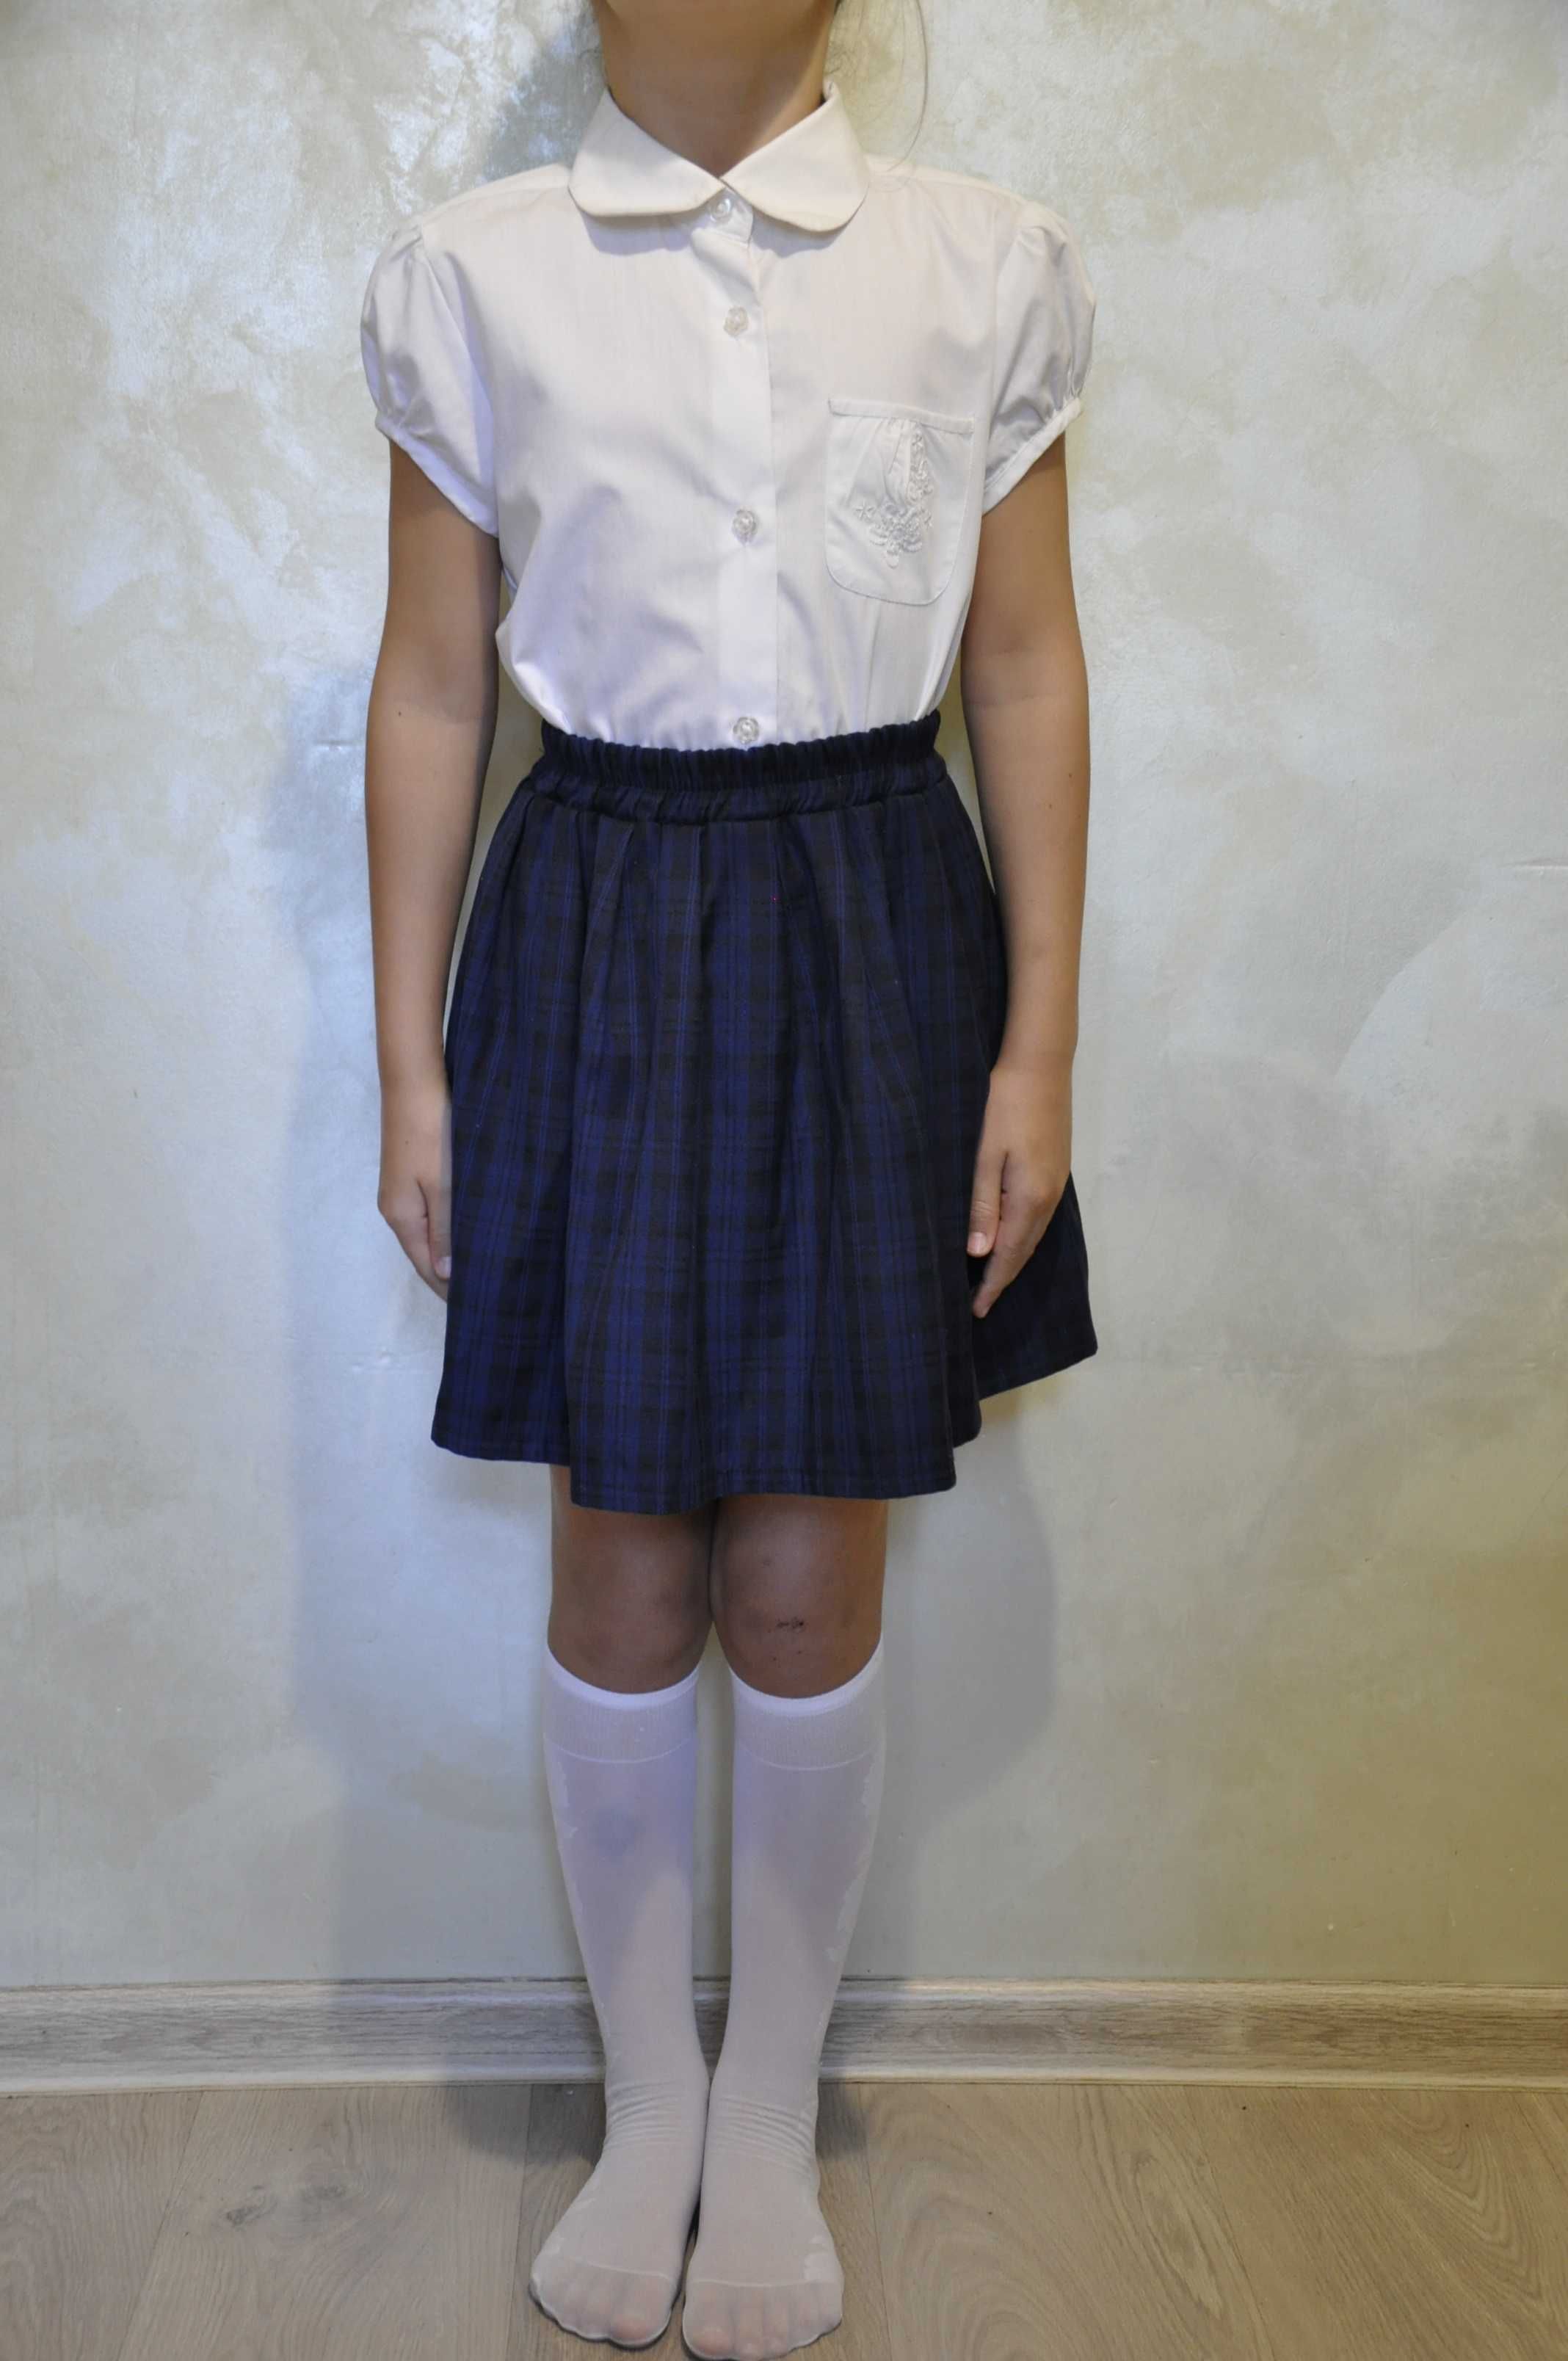 Біла шкільна блуза з коротким рукавом на дівчинку з ростом 122 см